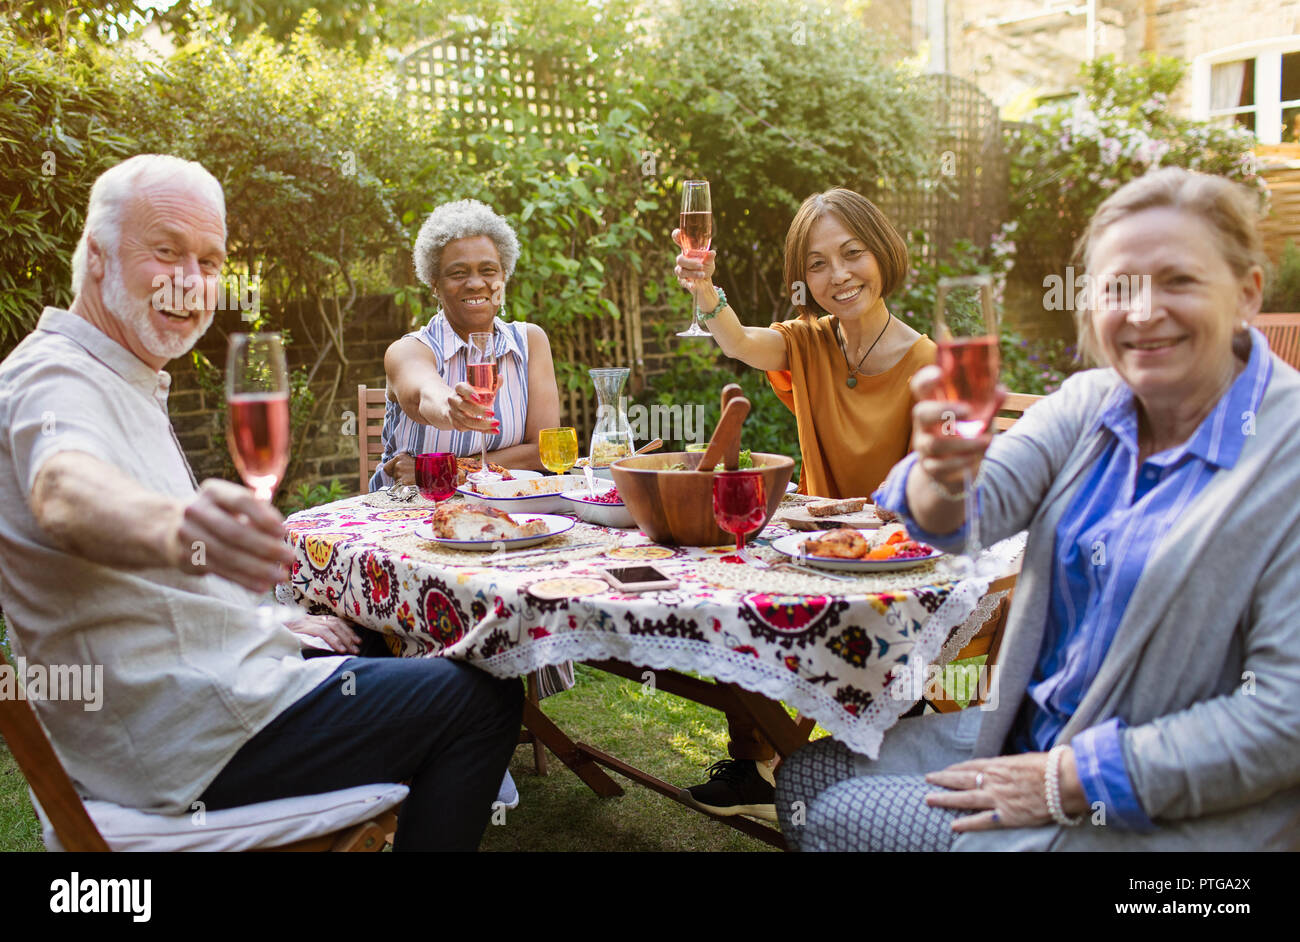 Retrato sonriente, seguros de altos funcionarios amigos bebiendo vino rosado y disfrutando de la comida en la mesa del patio Foto de stock